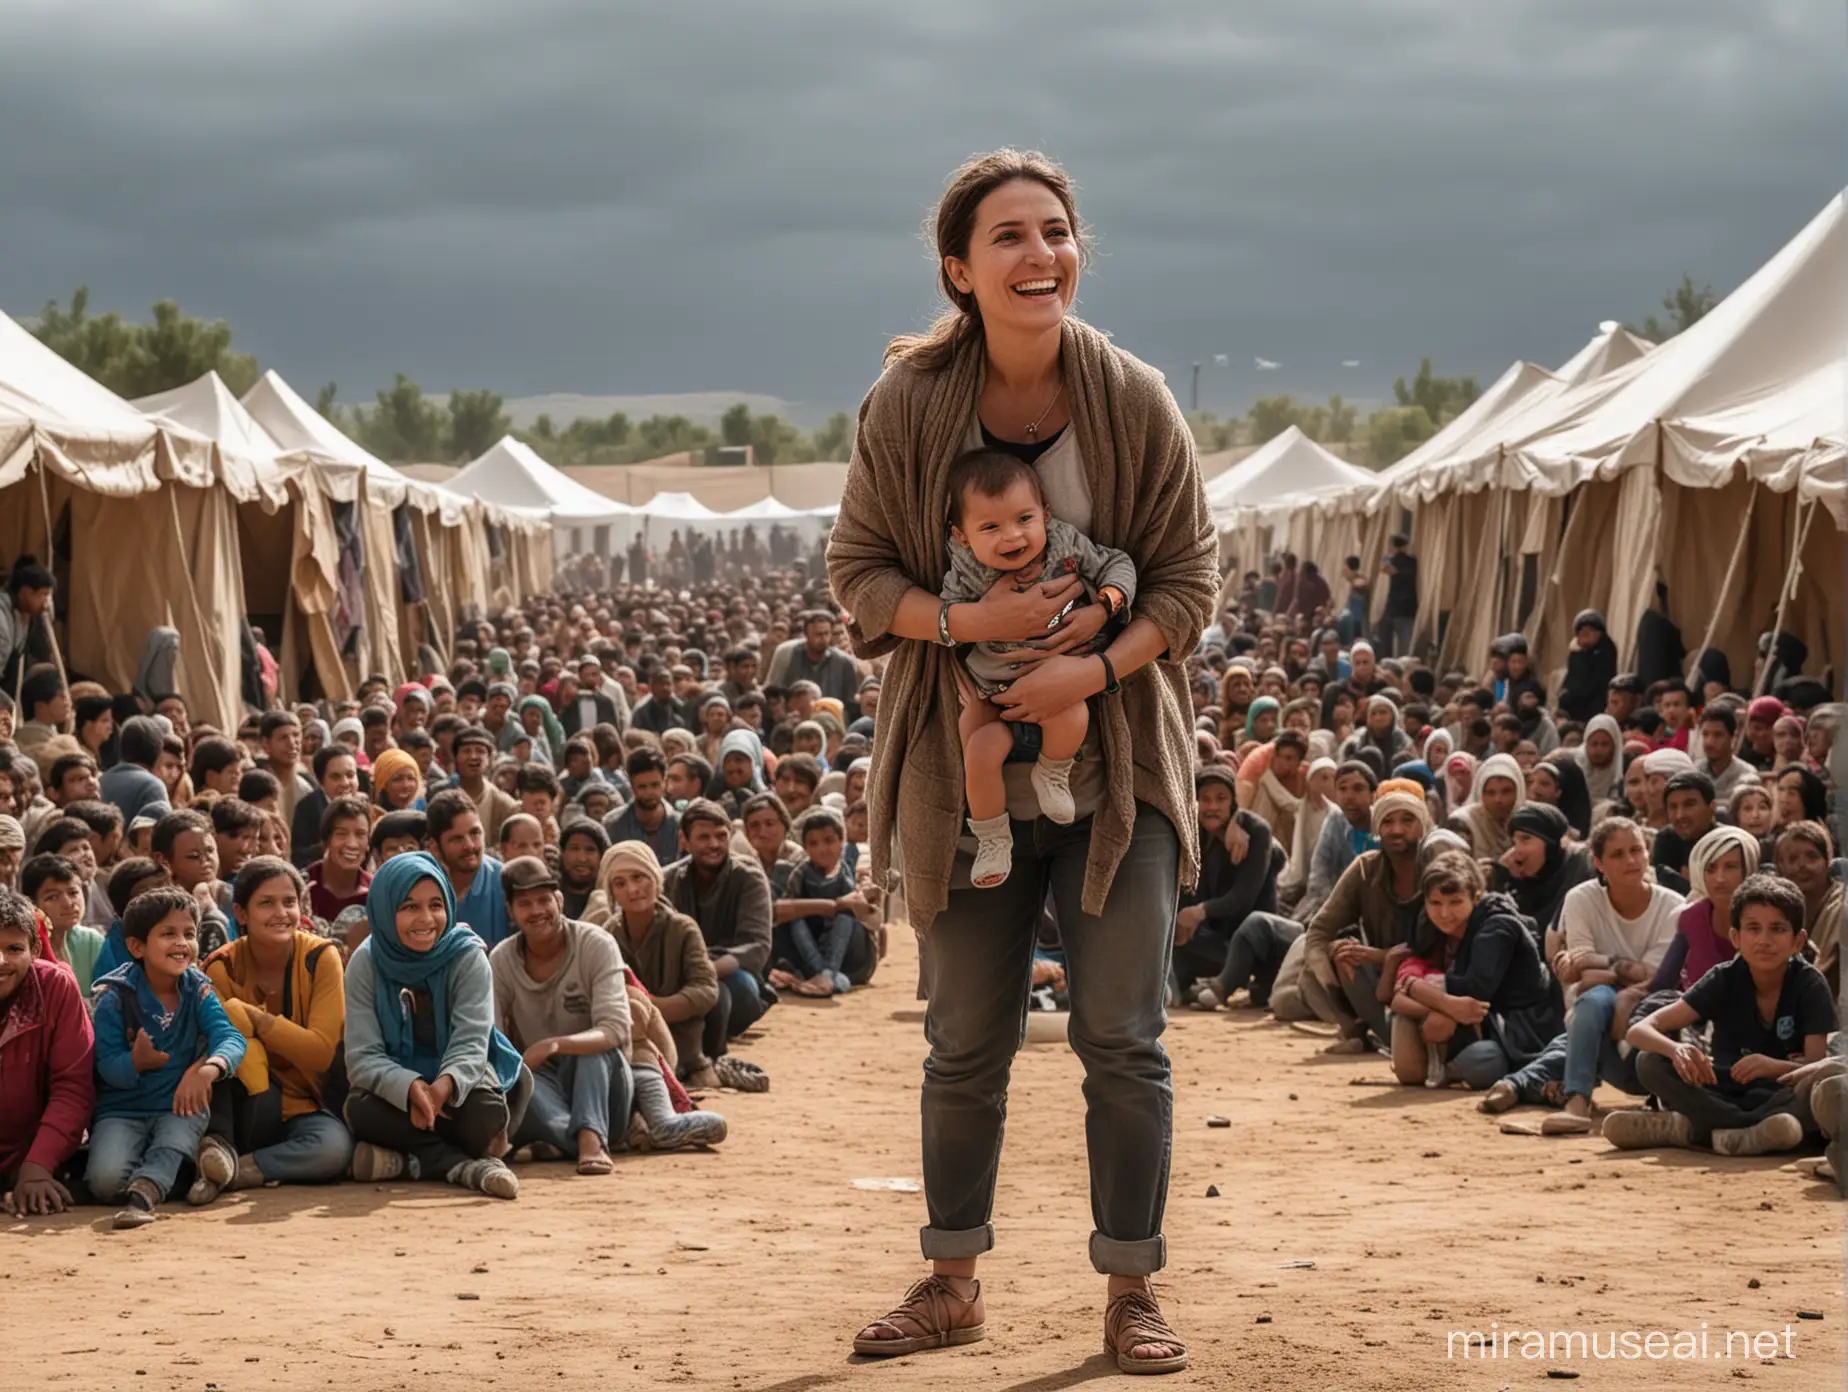 Uma Mulher e menino 5 anos, num palco de teatro, a olhar em frente, de pé, corpo inteiro, com um sorriso, no centro da cena de um campo de refugiados com tendas e alguns refugiados em volta. Um homem de costas a dirigir-se ao palco, e público sentado no teatro. 